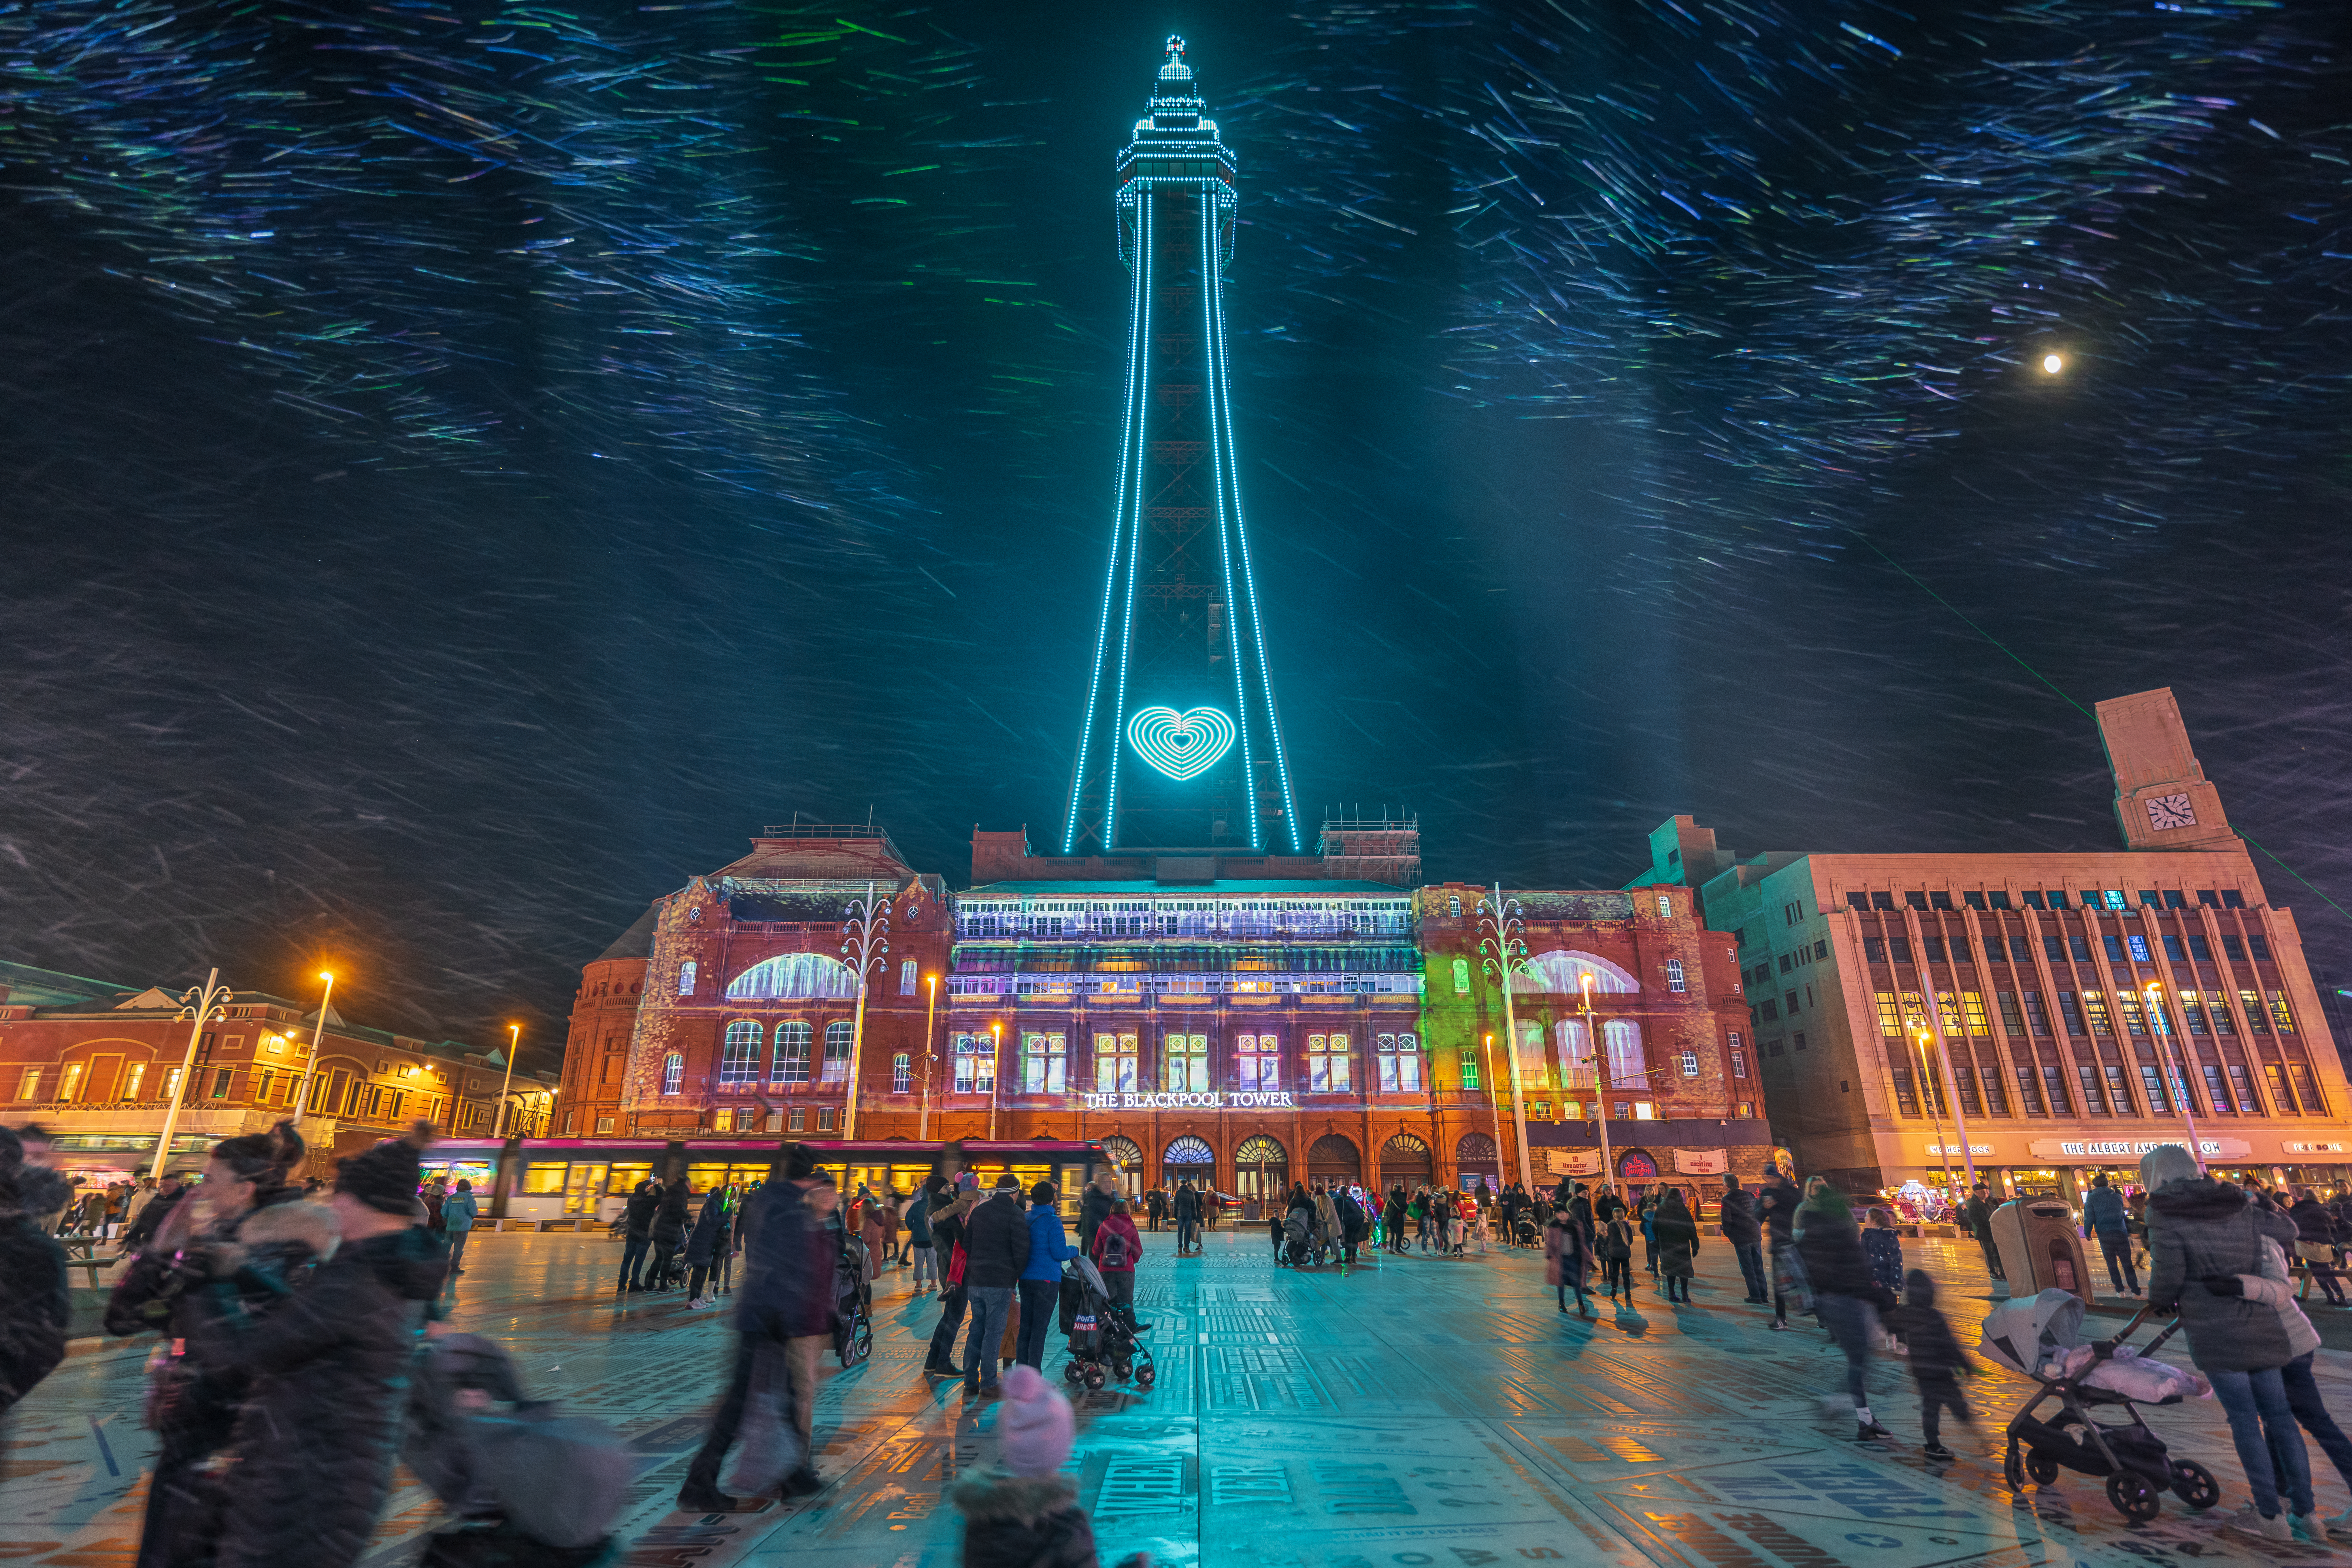 Besuchen Sie Blackpool und erleben Sie die wundervollen saisonalen Beleuchtungen, die jeden in festliche Stimmung versetzen